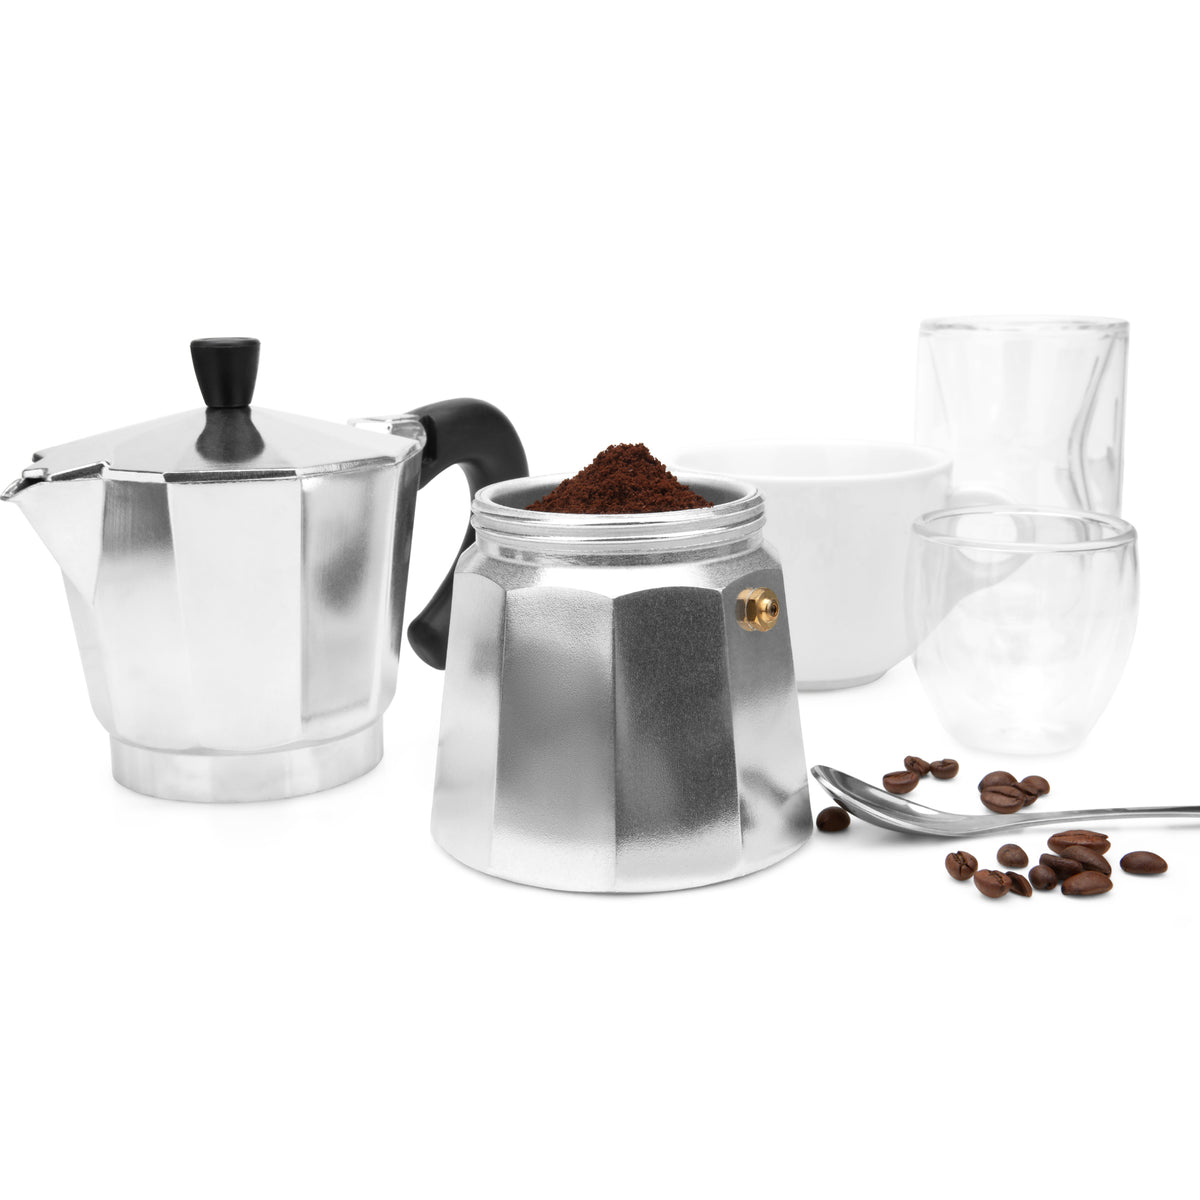 https://espresso-works.com/cdn/shop/products/espressoworks-six-cup-moka-pot-stovetop-espresso-maker-04_1200x.jpg?v=1604993370